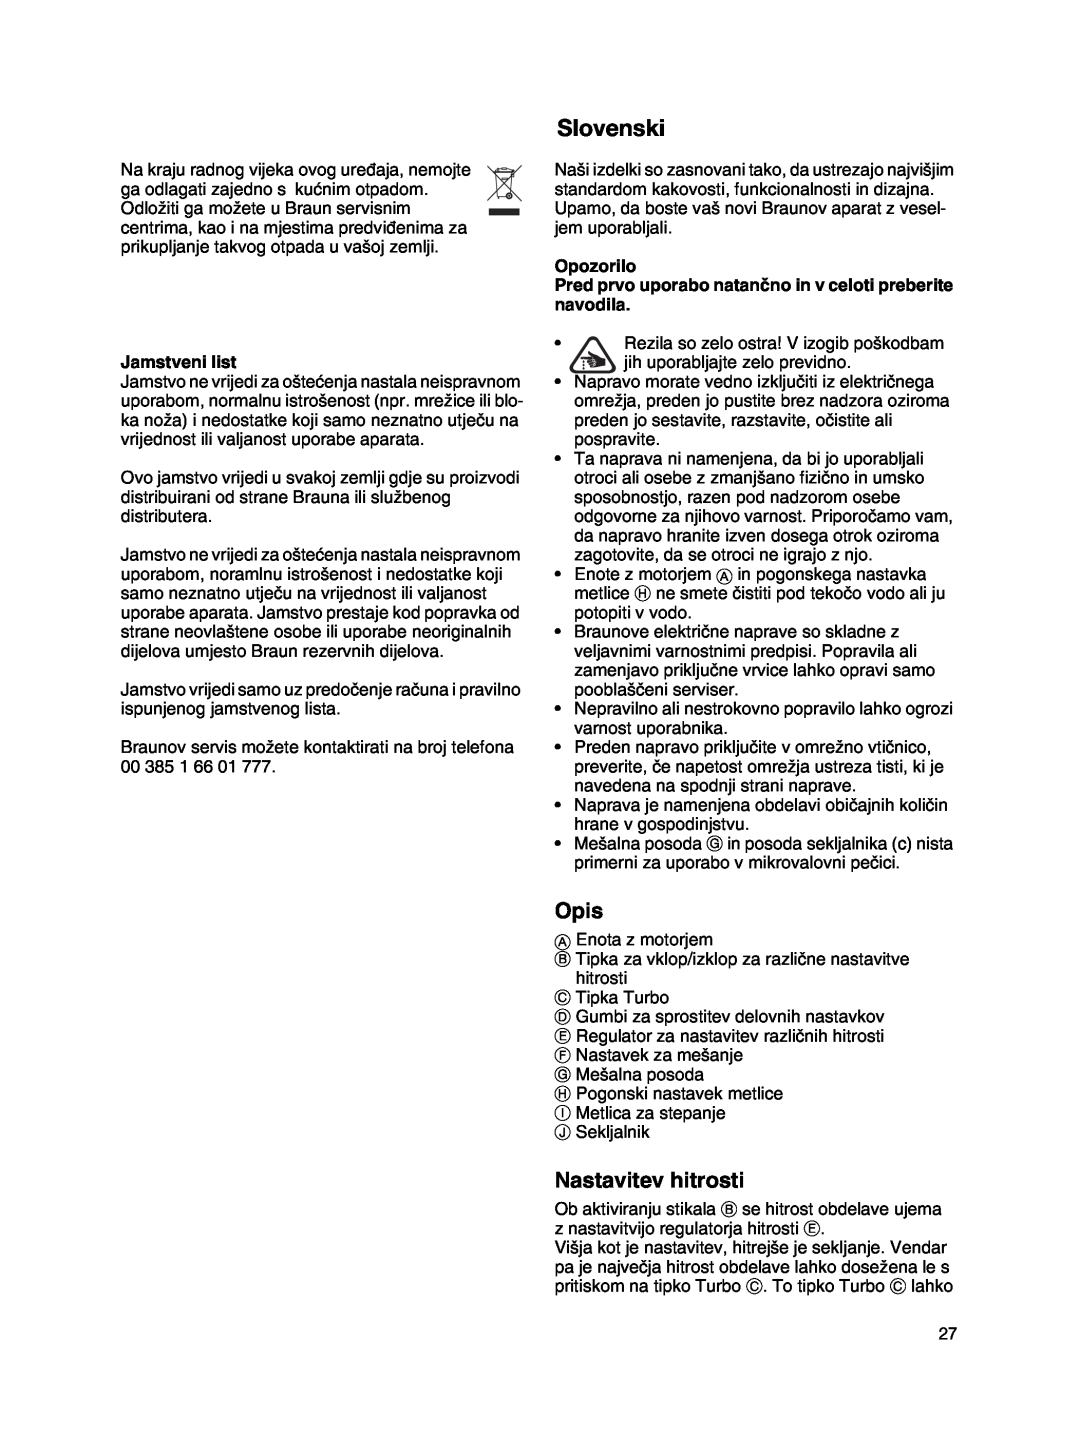 Braun MR 500 manual Slovenski, Nastavitev hitrosti, Jamstveni list, Opis 